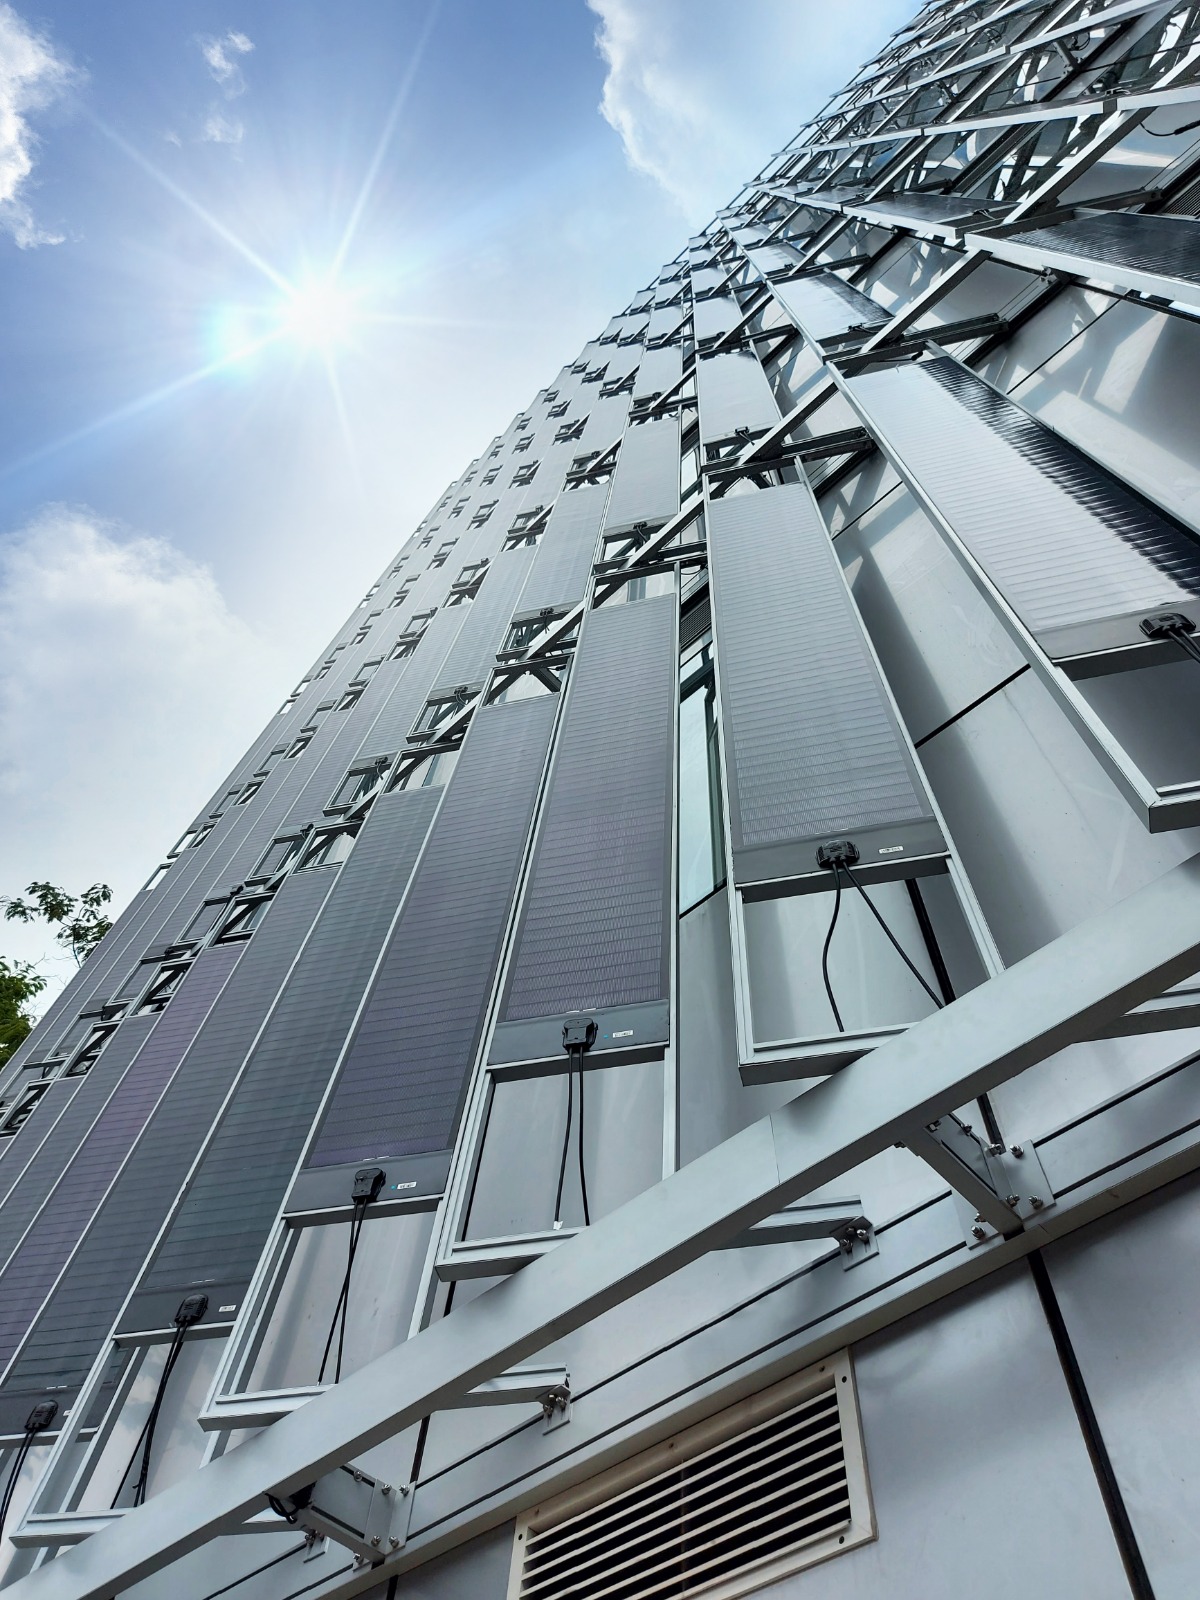 Projeto inédito no Brasil utiliza filme fino flexível na geração de energia solar em fachada de prédio